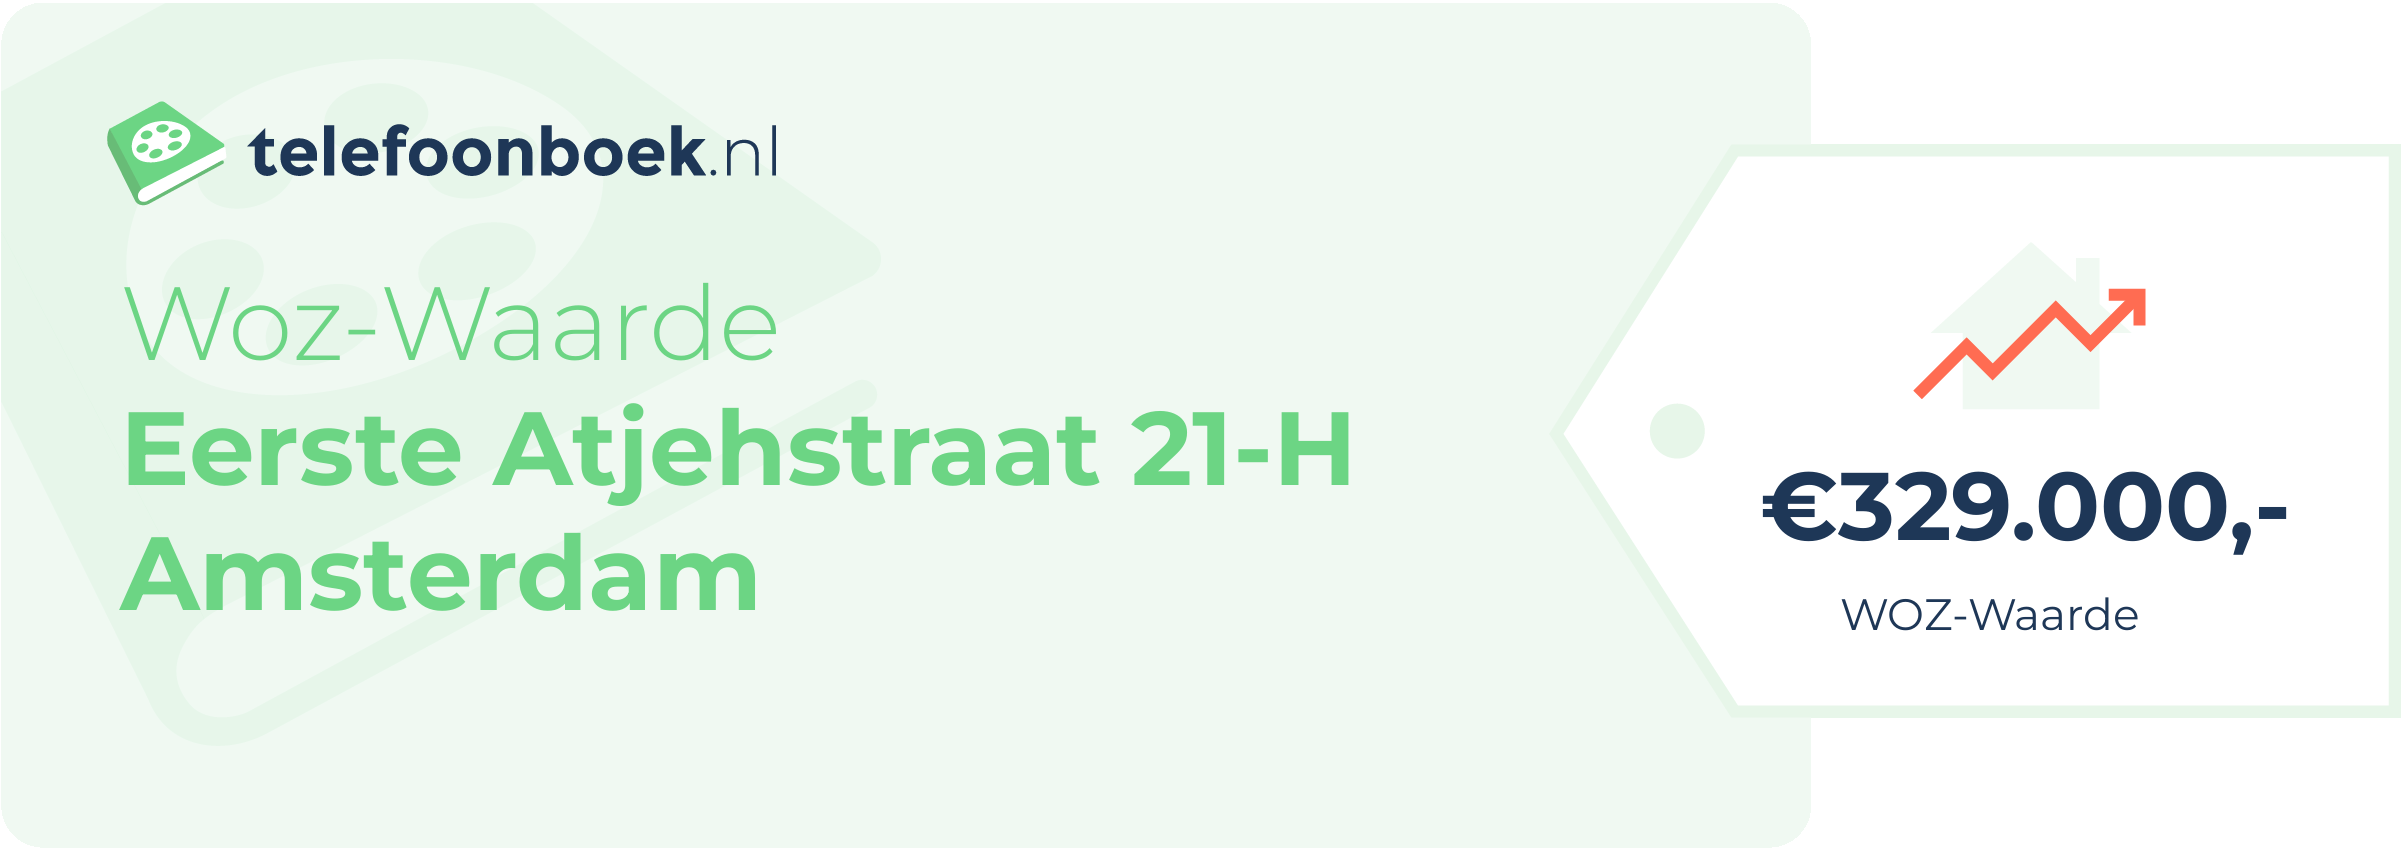 WOZ-waarde Eerste Atjehstraat 21-H Amsterdam